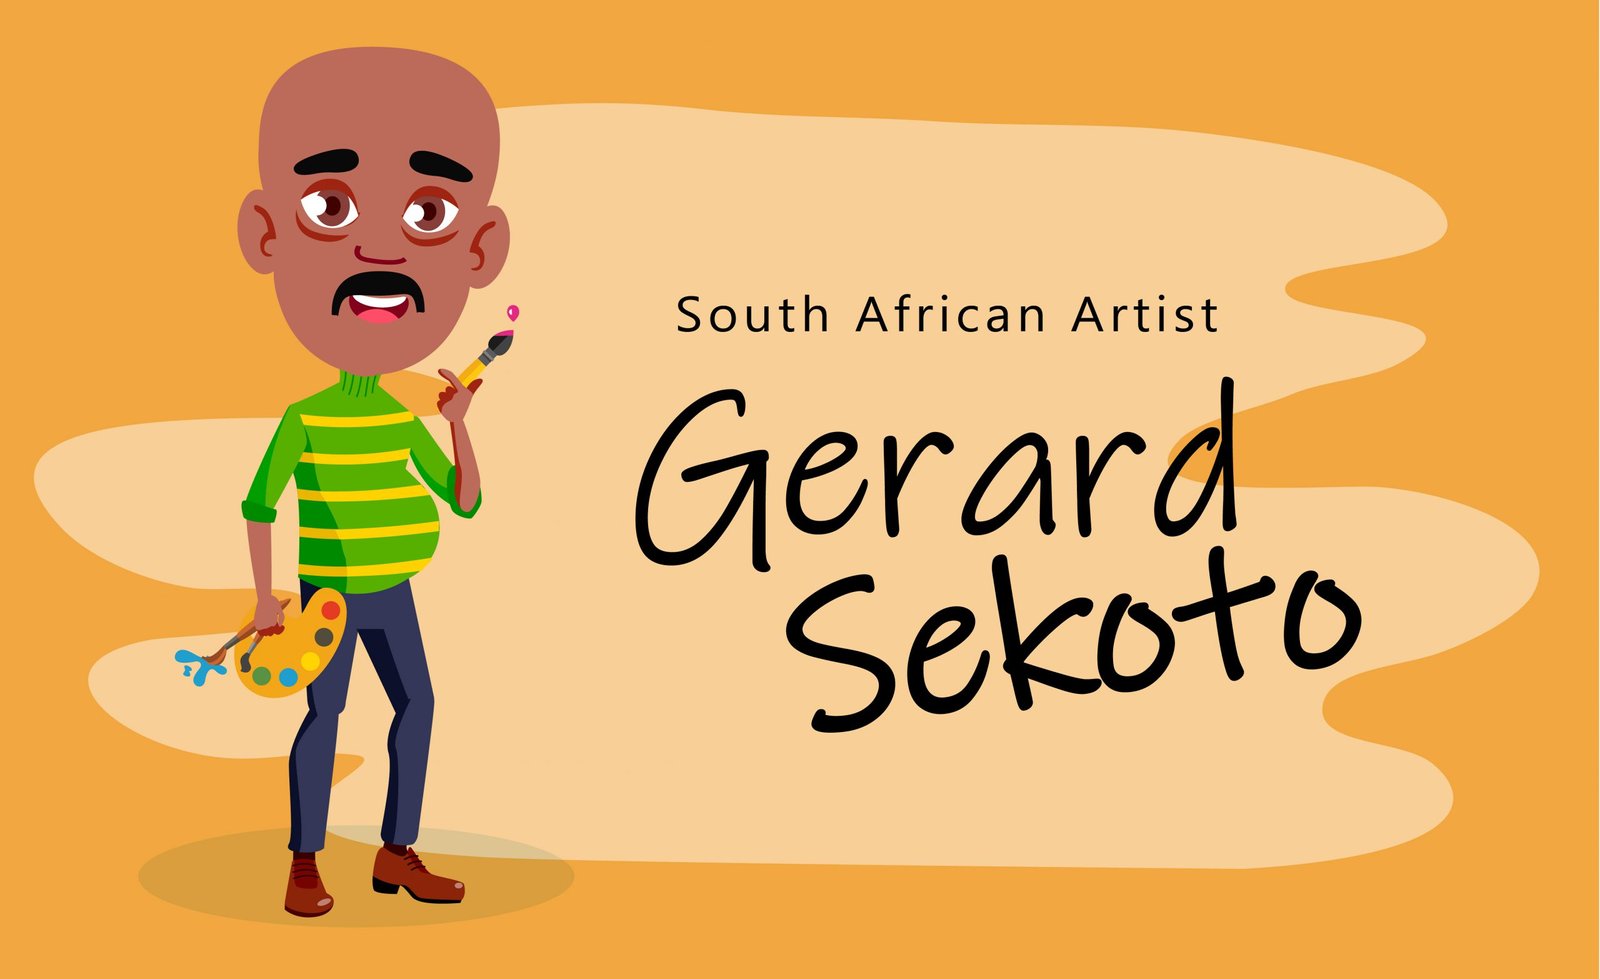 gerard sekoto artwork analysis